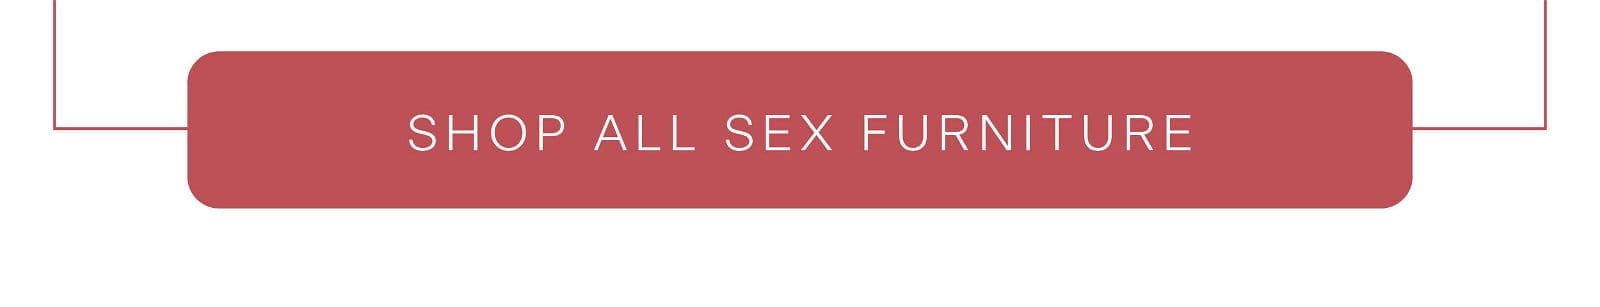 Shop all sex furniture